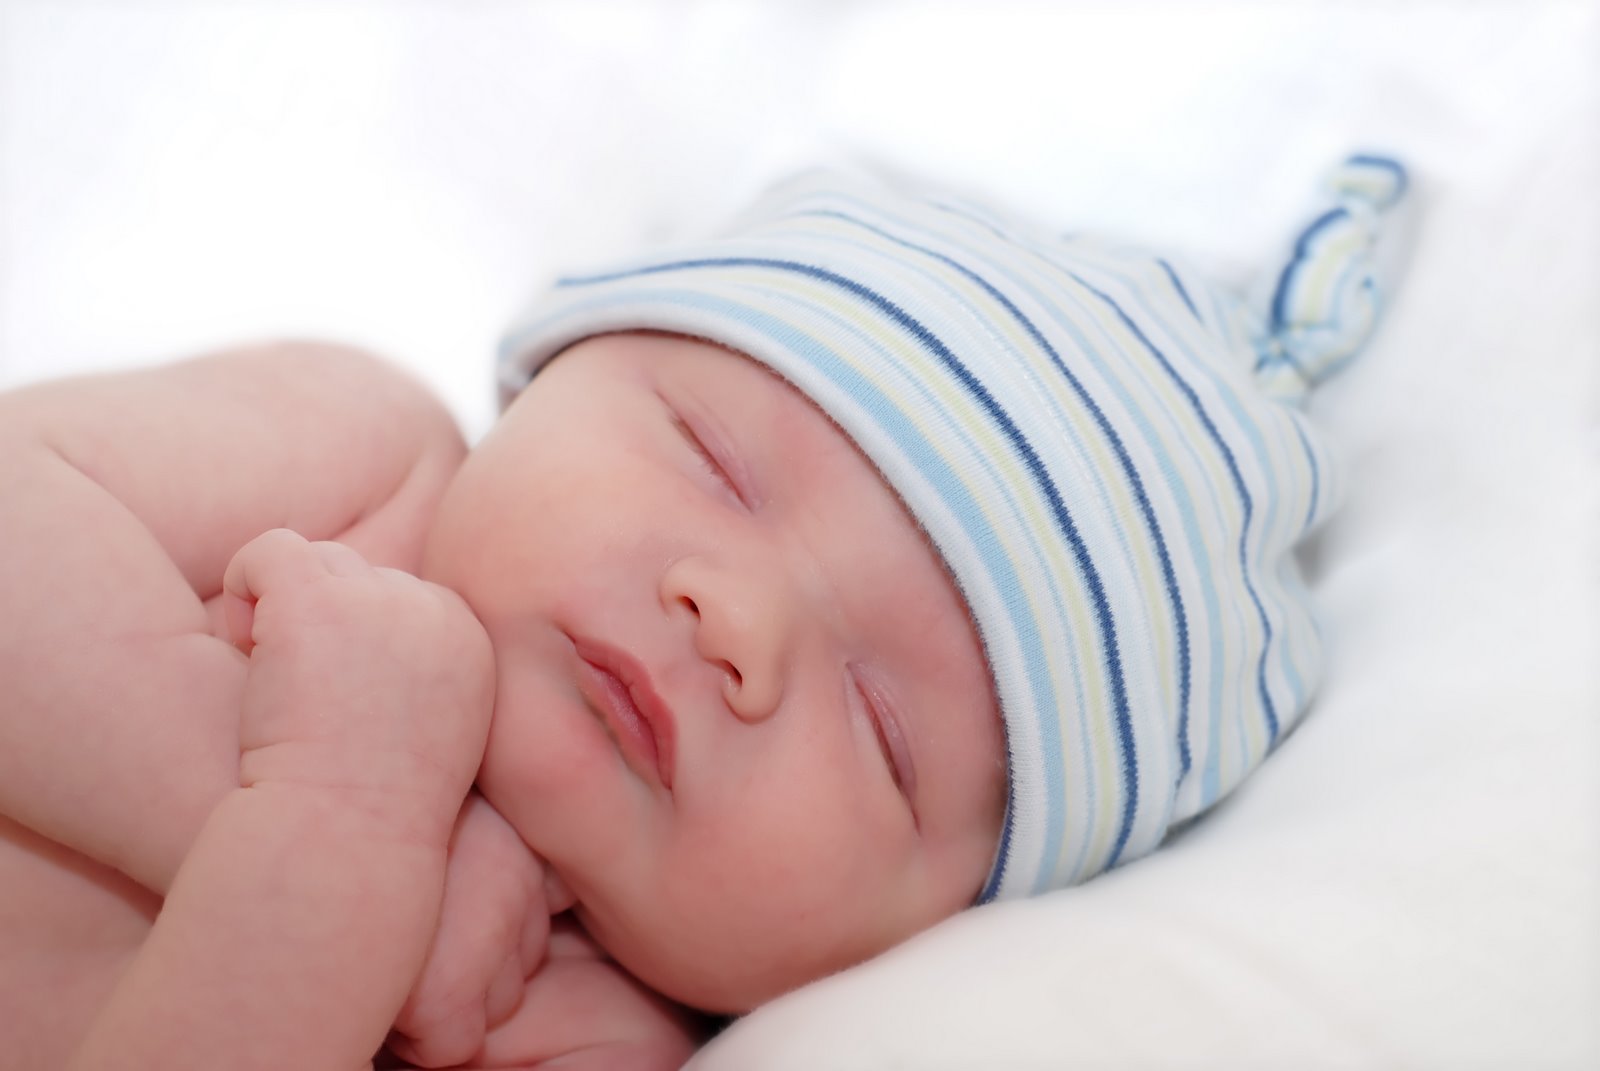 عادات خاطئة تمنع النوم العميق لطفلك